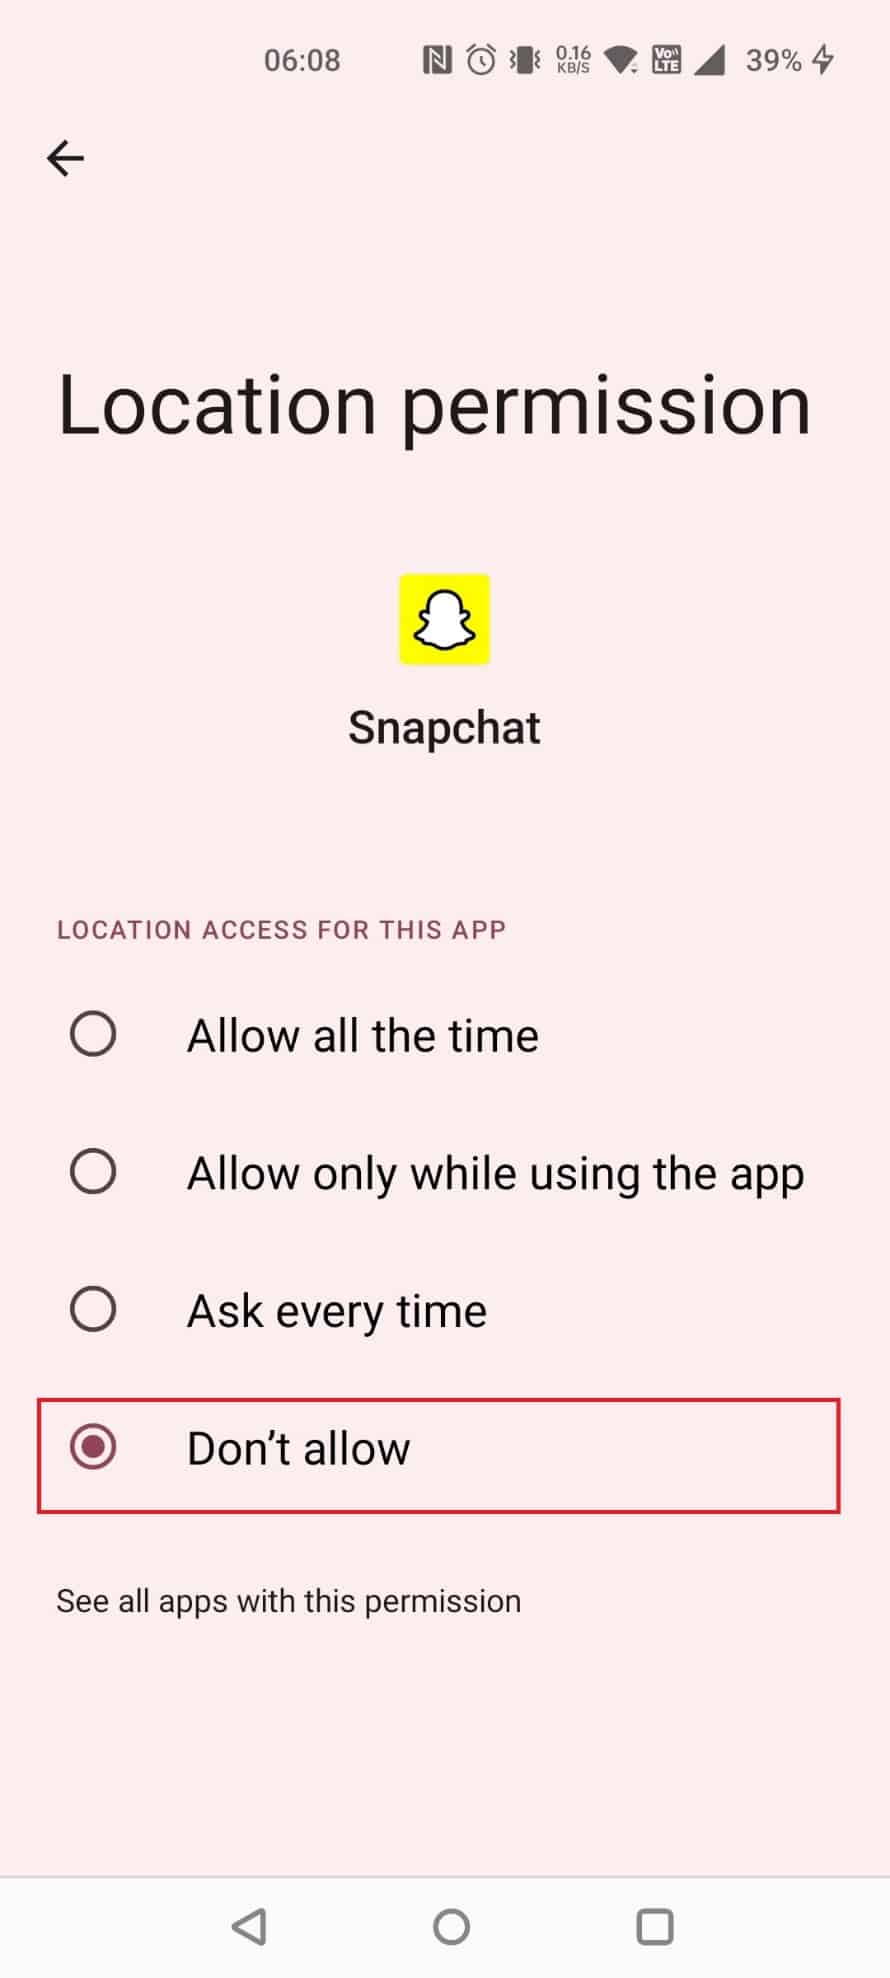 scegli Non consentire per limitare l'accesso alla posizione per l'app | Snapchat può essere rintracciato